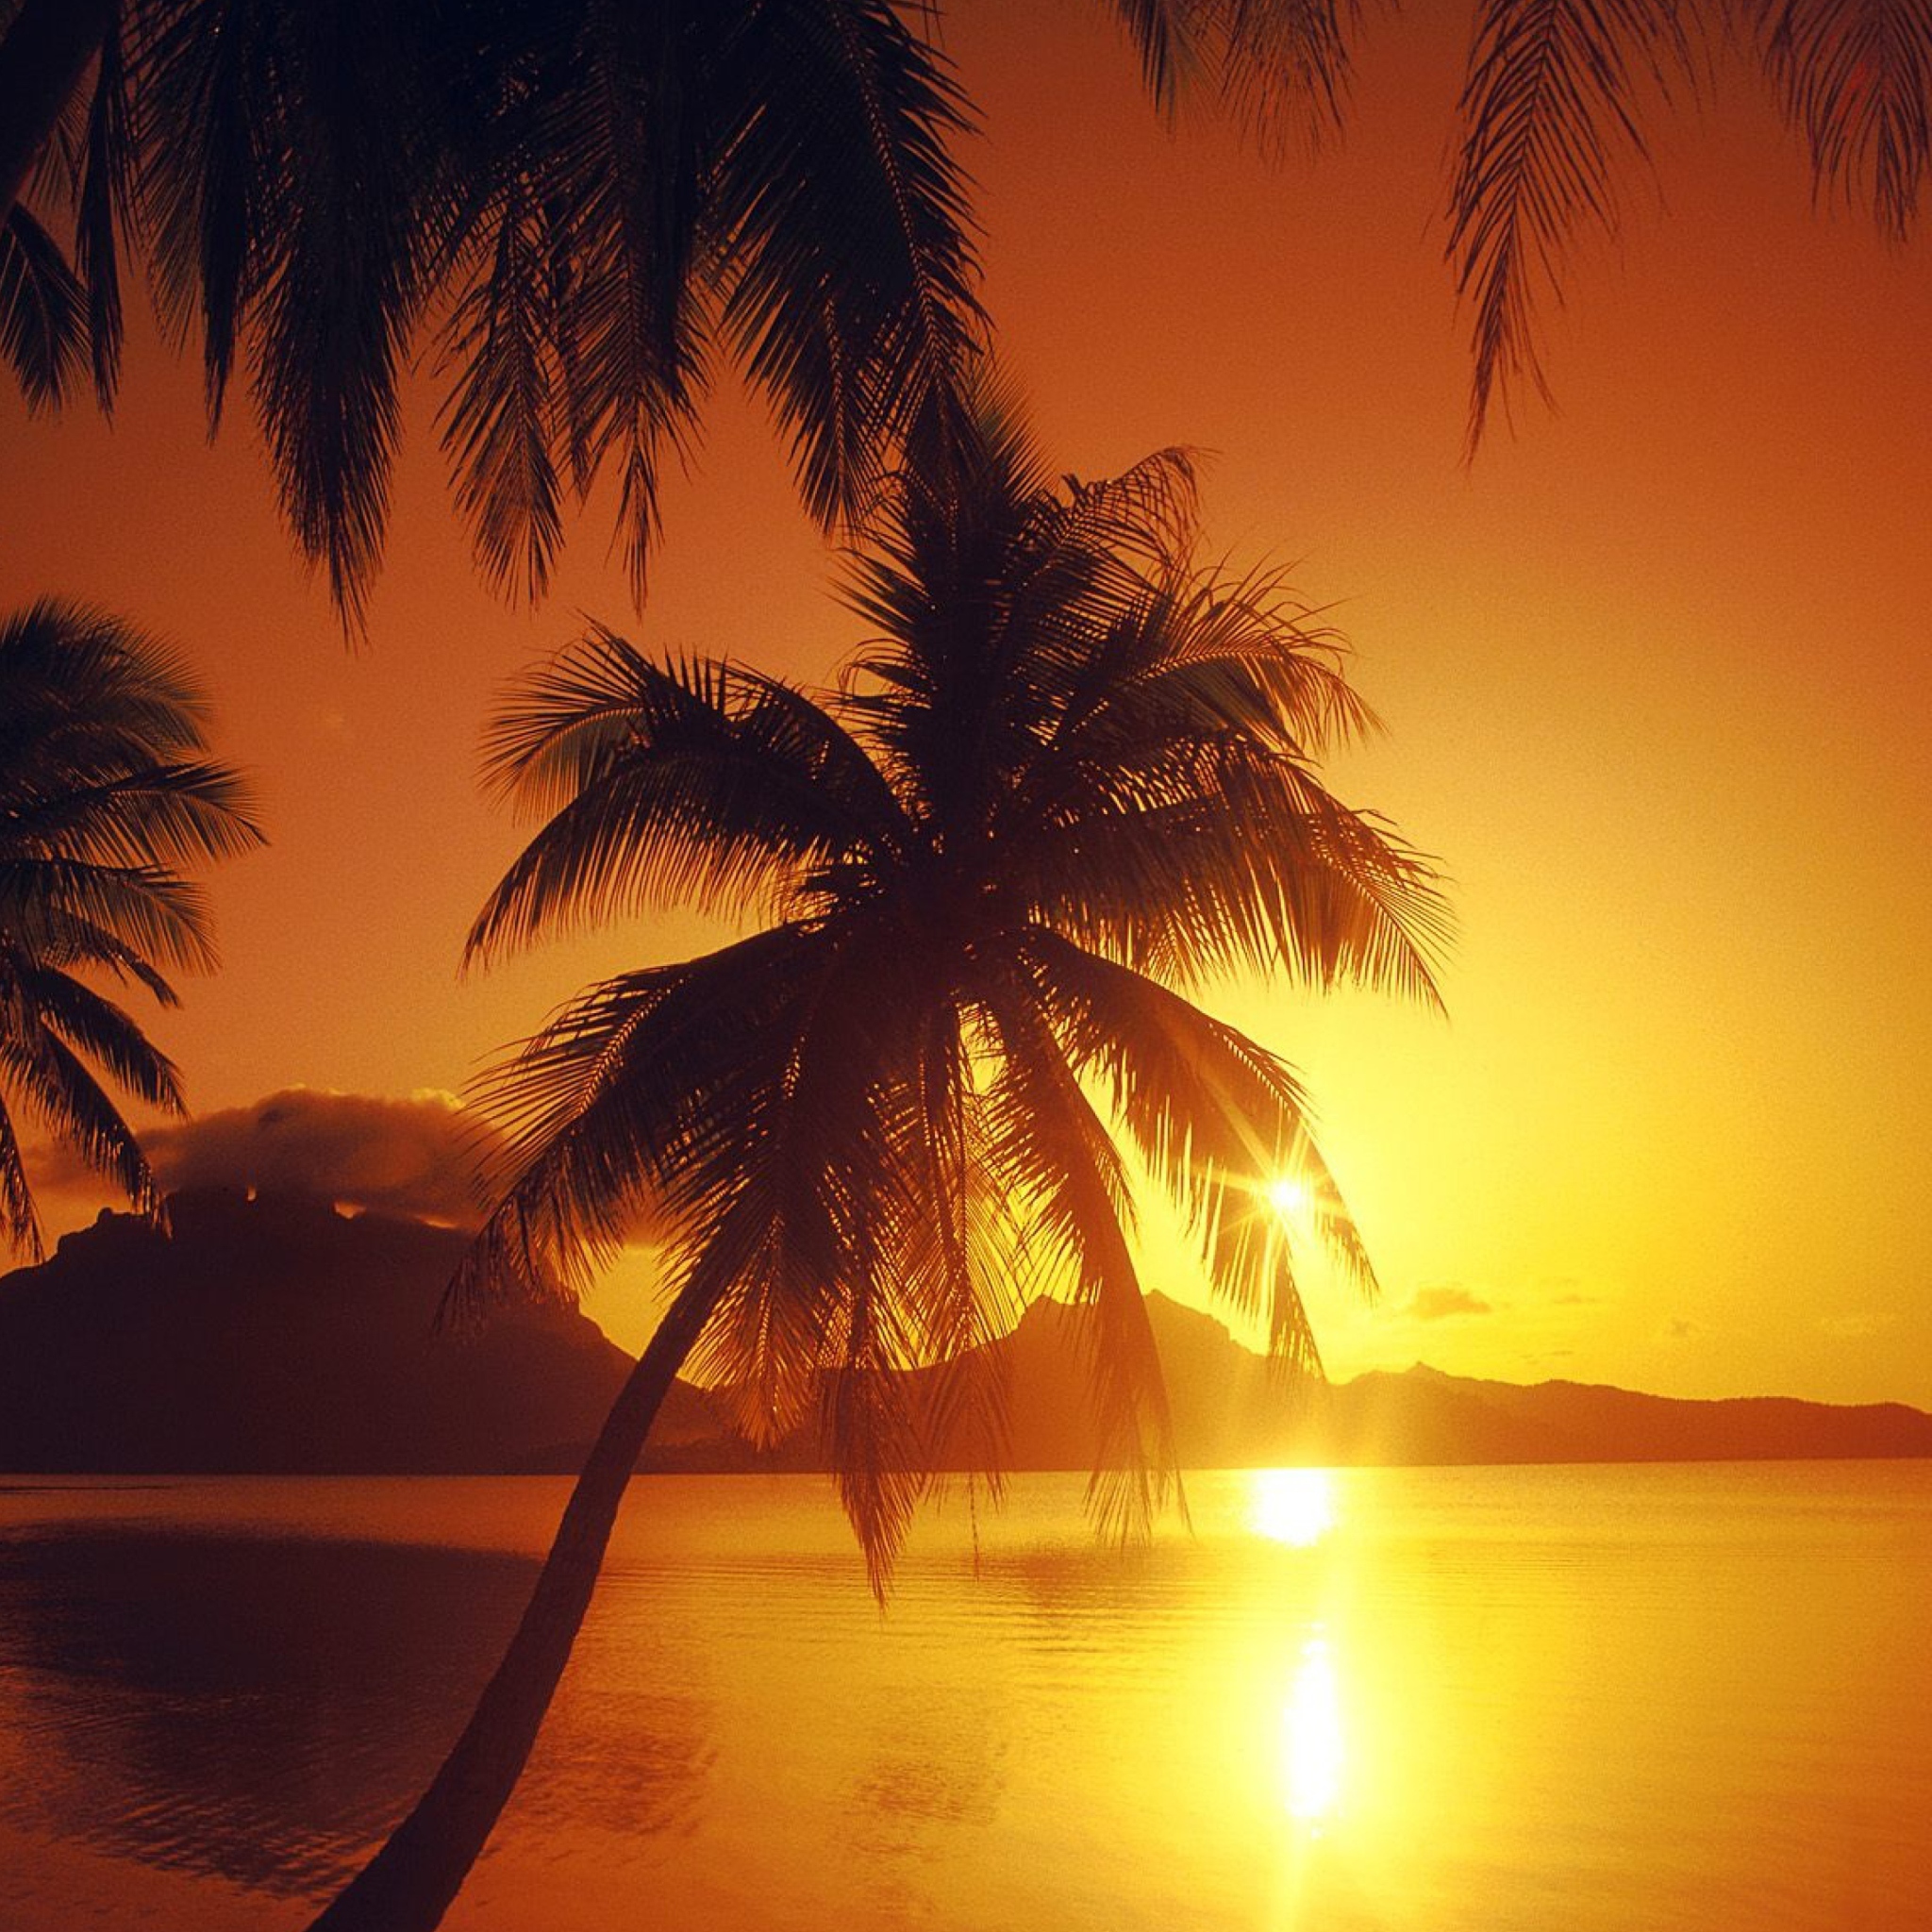 Das Palms At Sunset Wallpaper 2048x2048